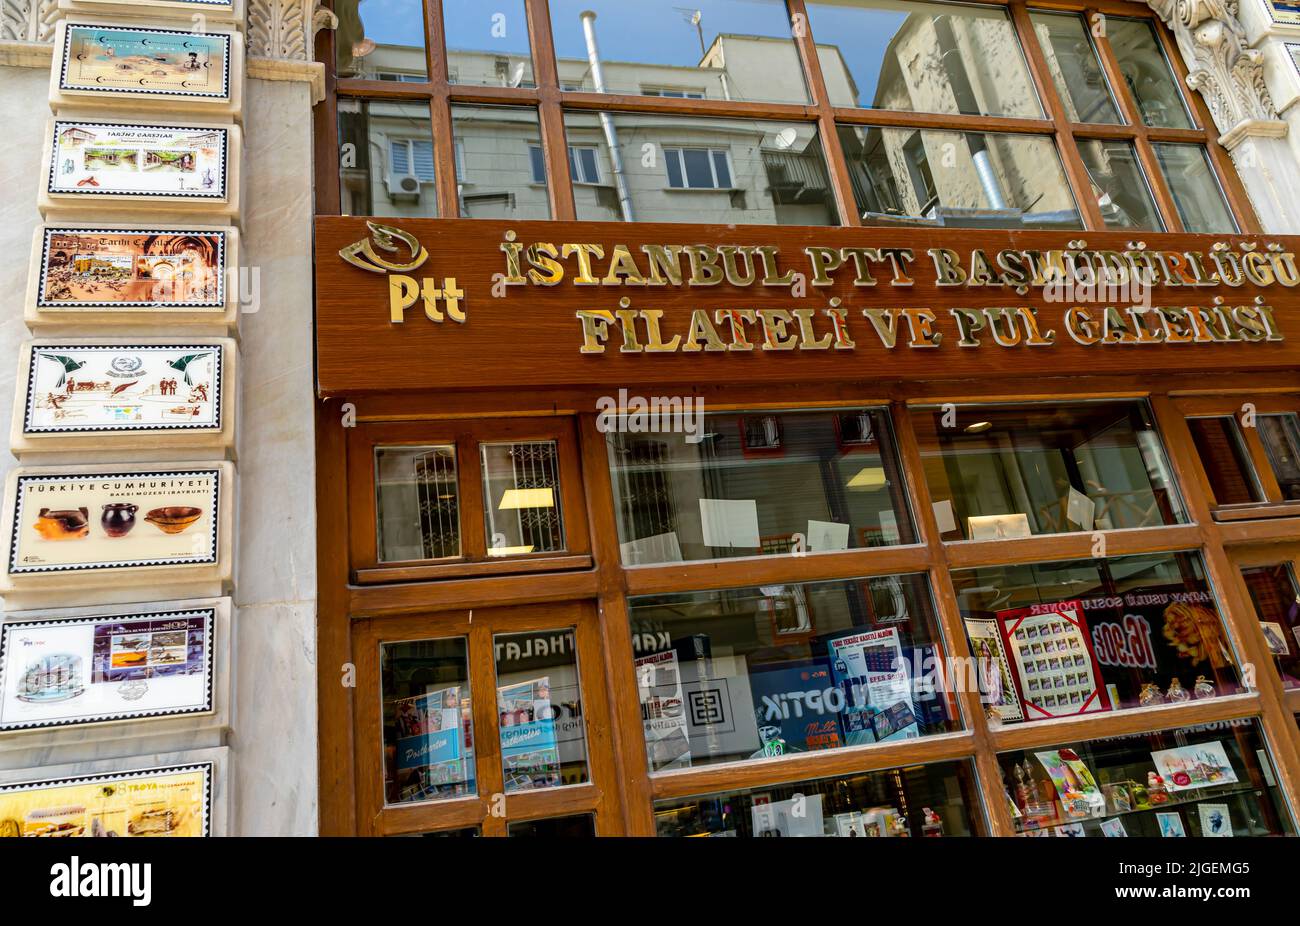 PTT FİLATELİ MAĞAZASI - Boutique philatélie à Fatih, Istanbul, Turquie Banque D'Images